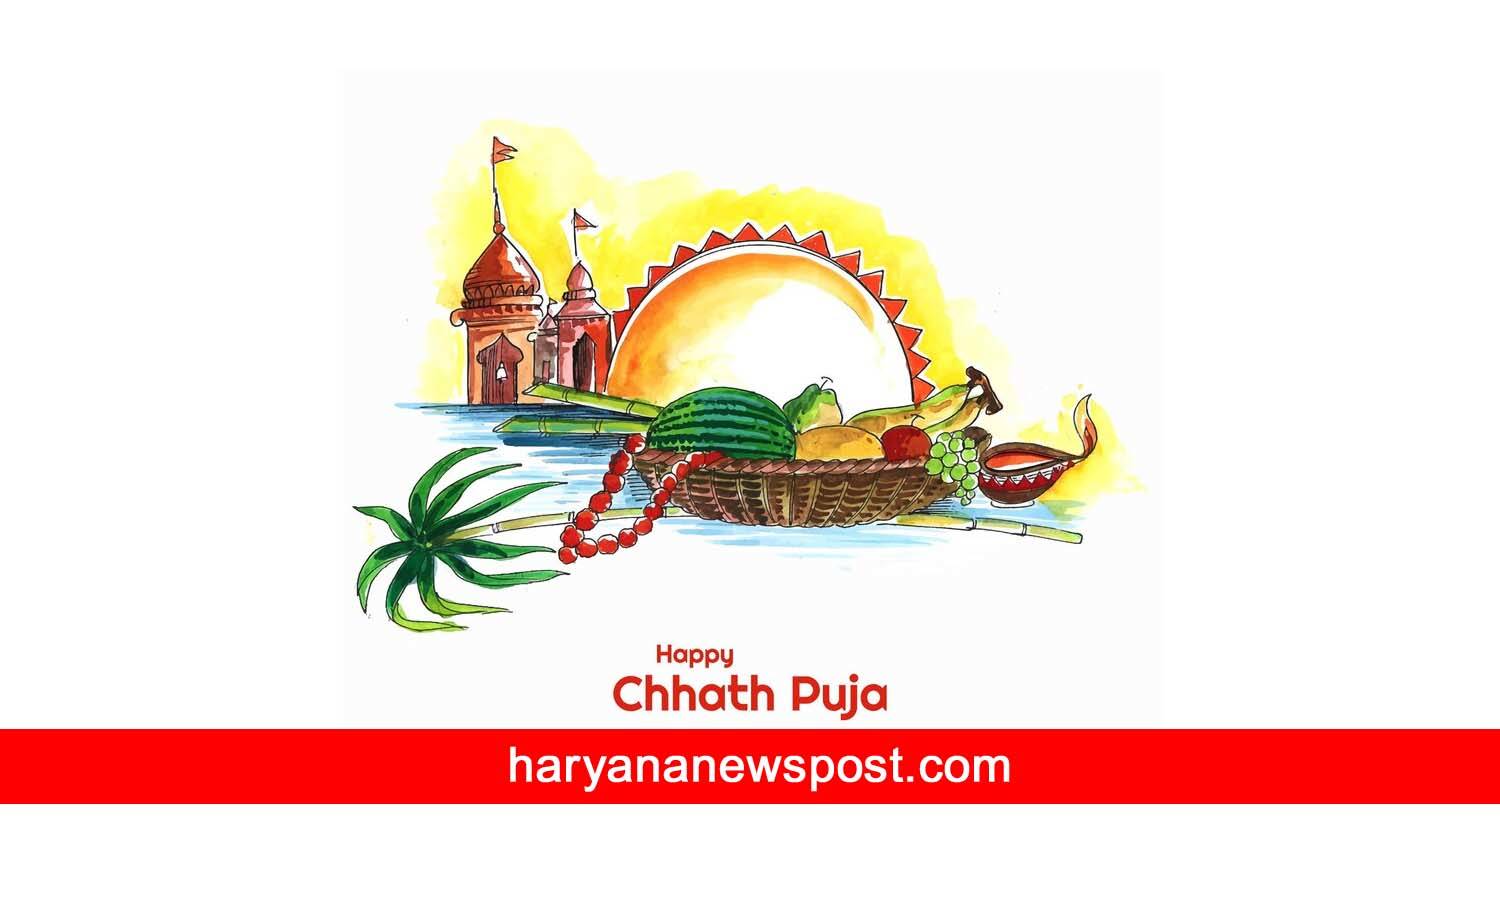 chhath puja invitation message in hindi